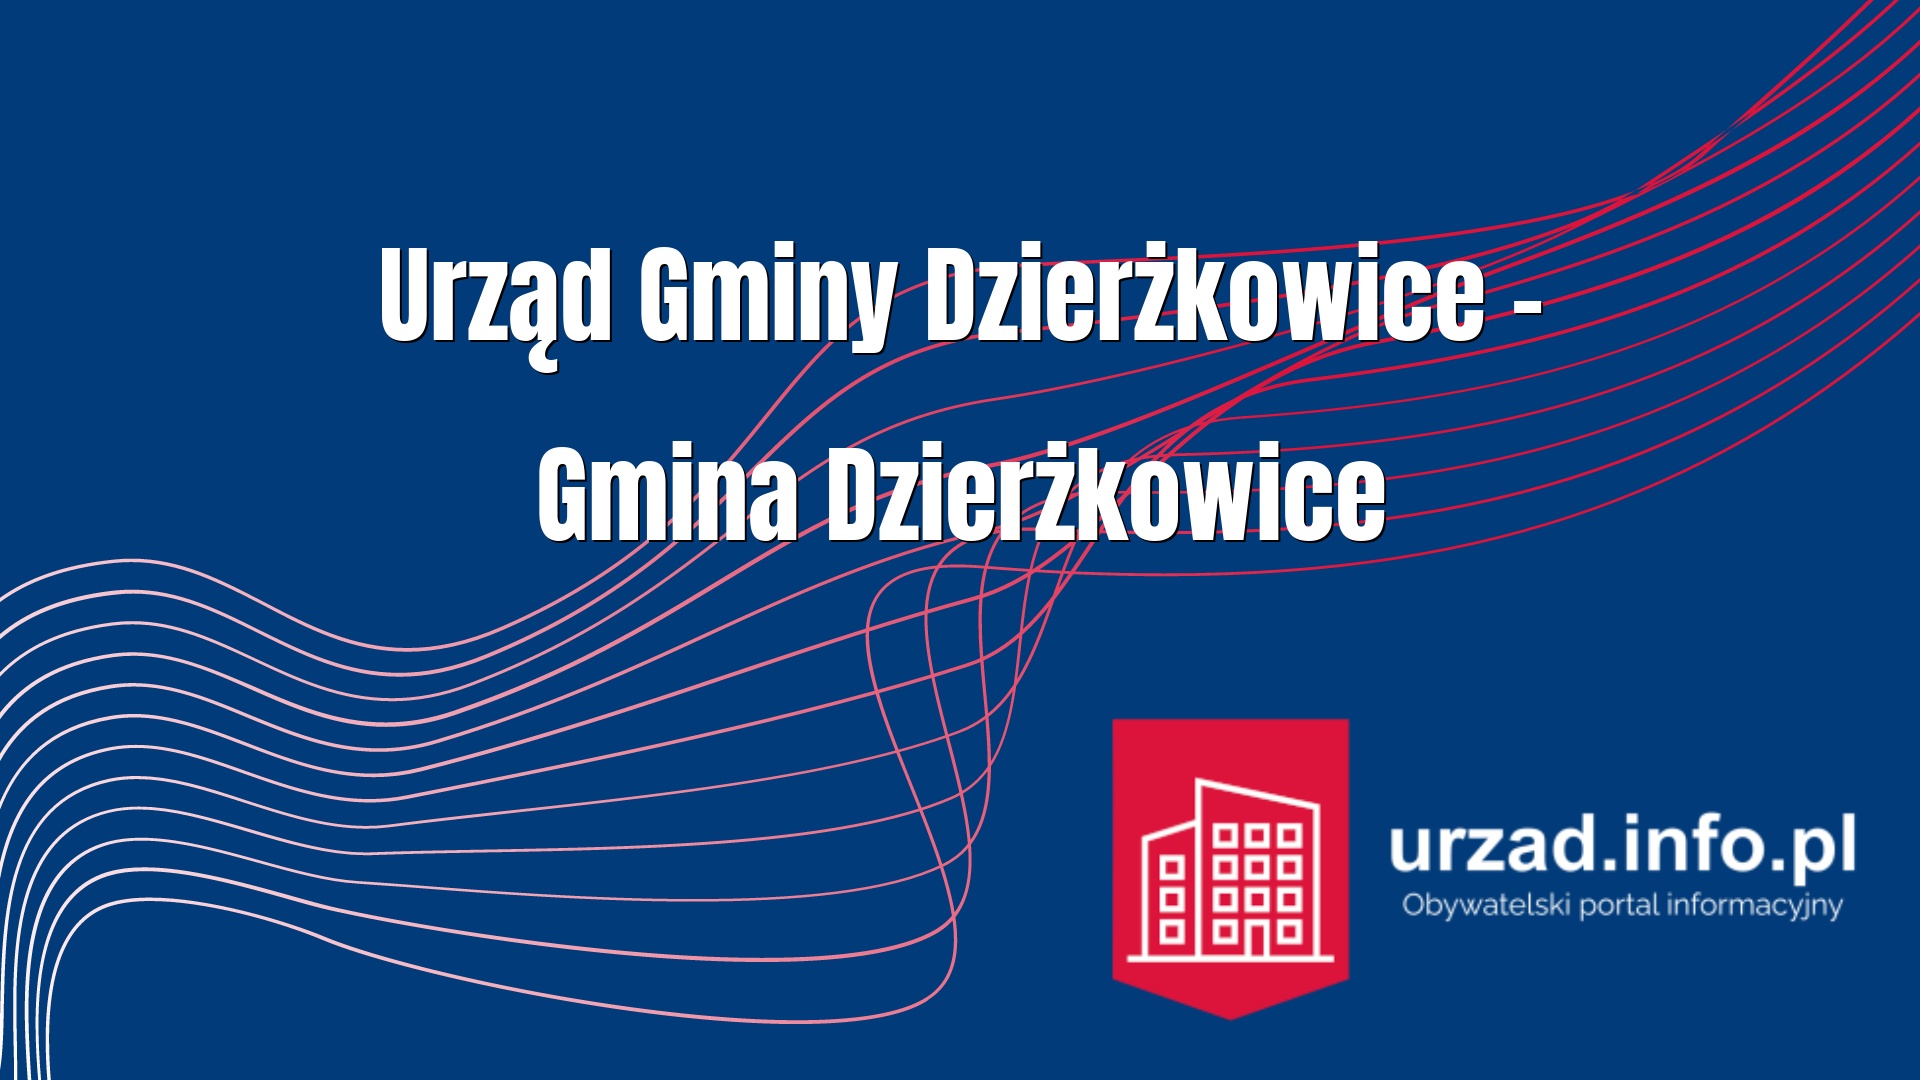 Urząd Gminy Dzierżkowice – Gmina Dzierżkowice